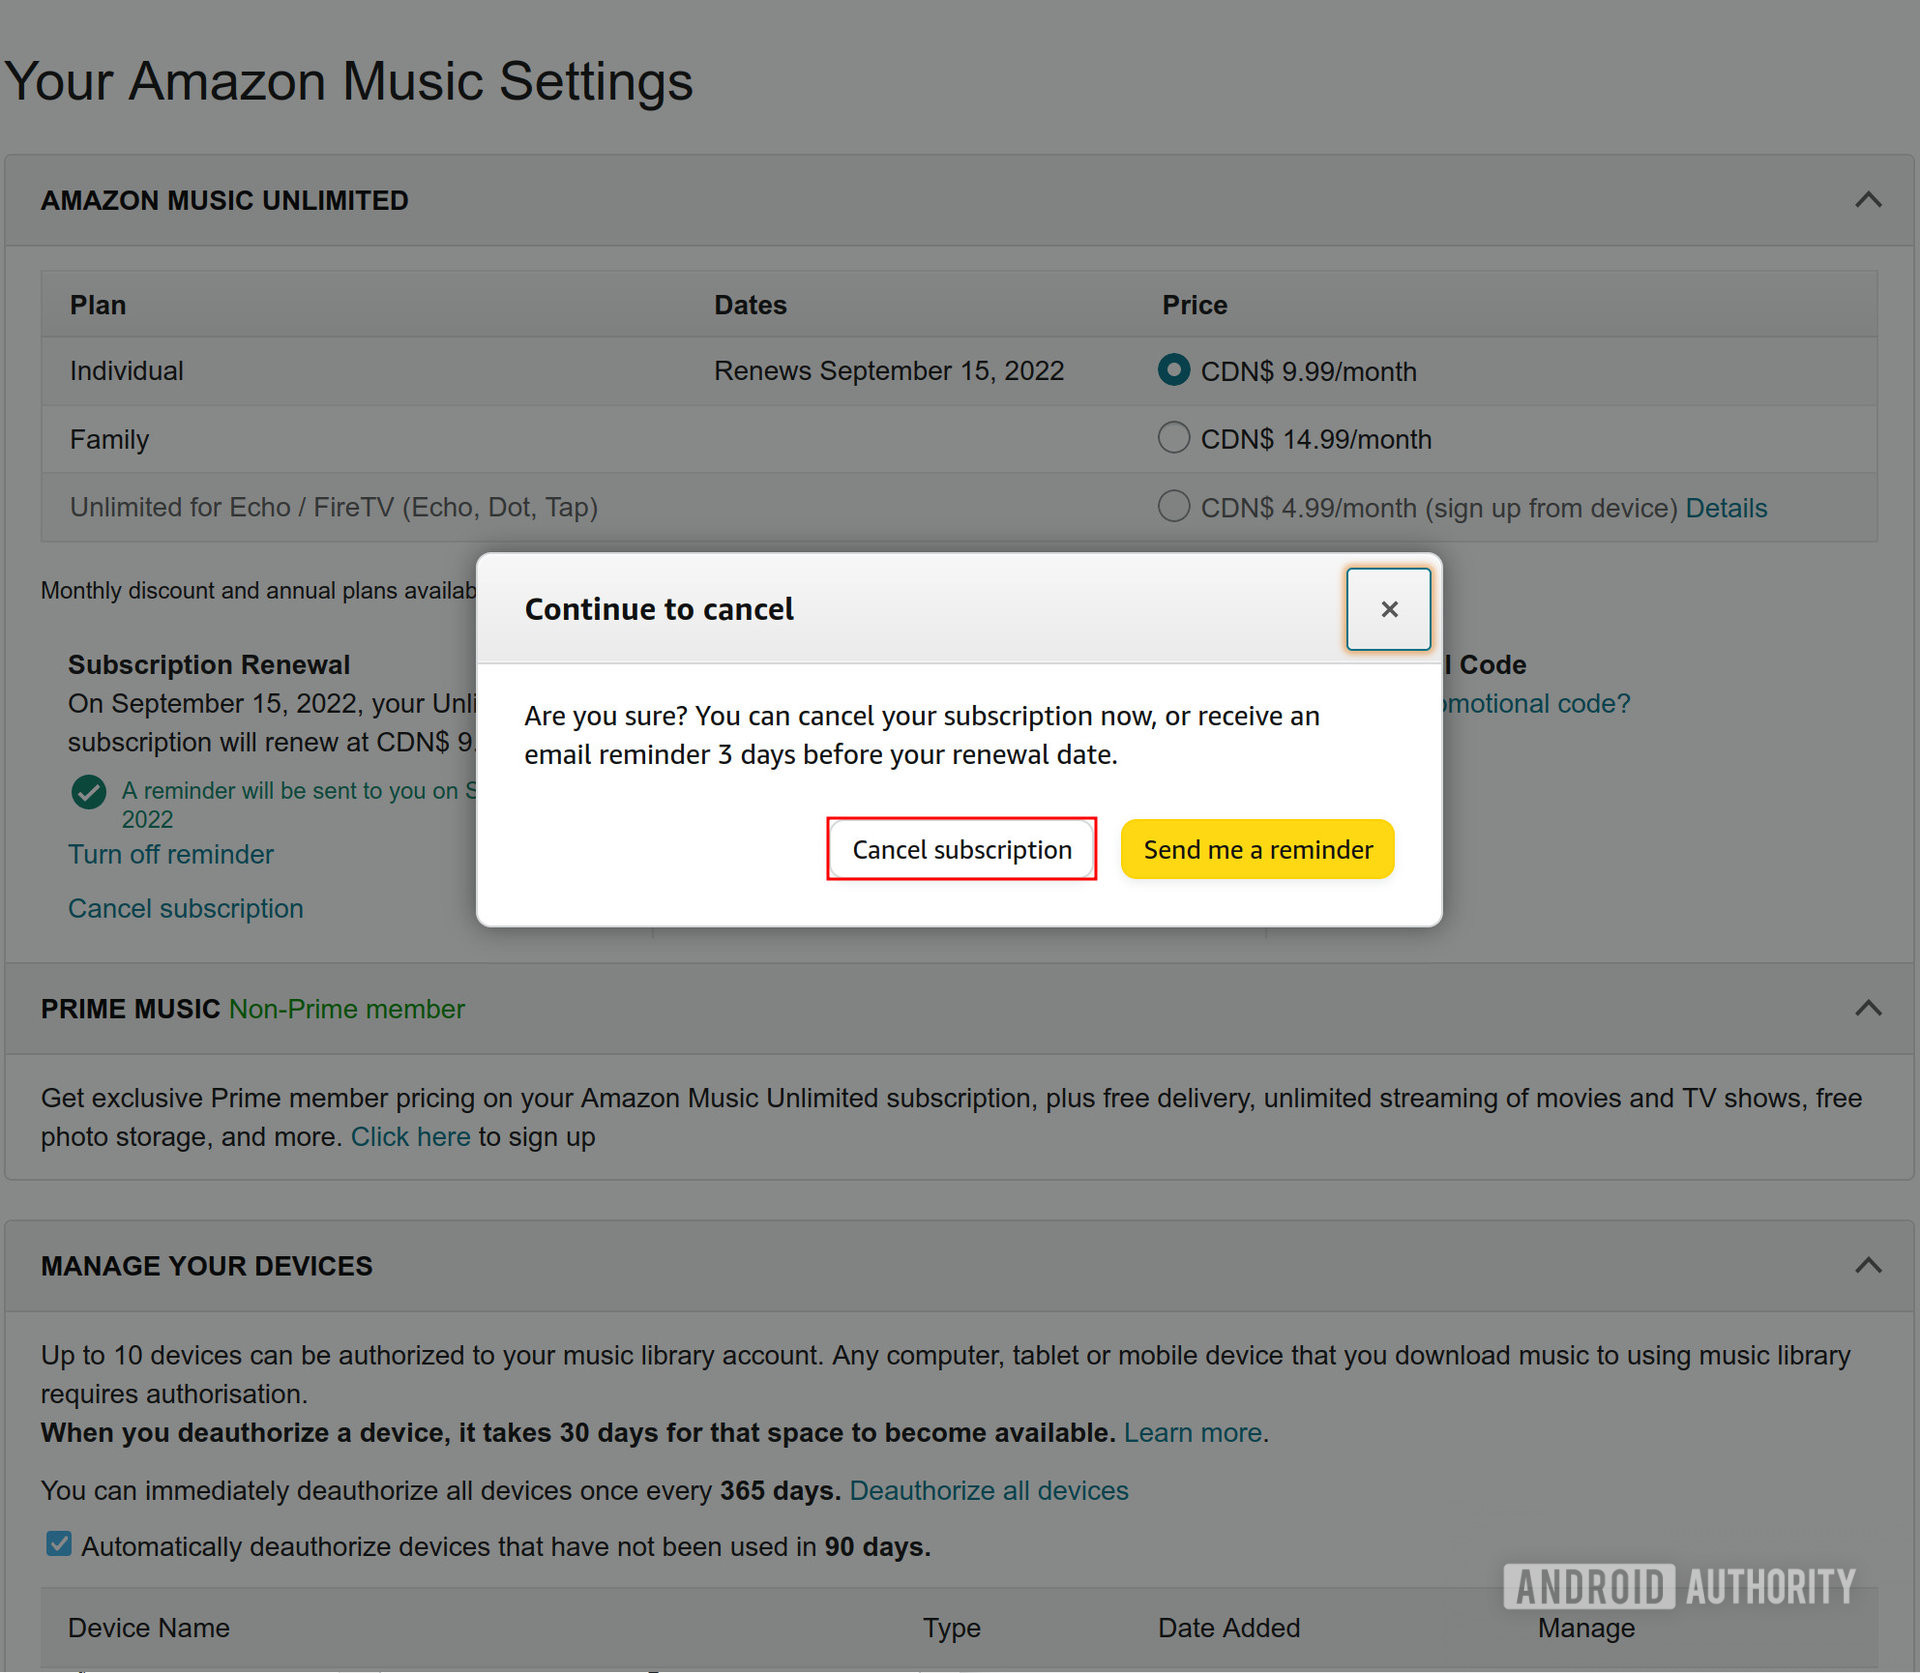 Munculan di halaman web pengaturan Amazon Music yang meminta untuk mengonfirmasi pembatalan langganan dengan kotak merah yang menyoroti opsi 'Batalkan langganan'.